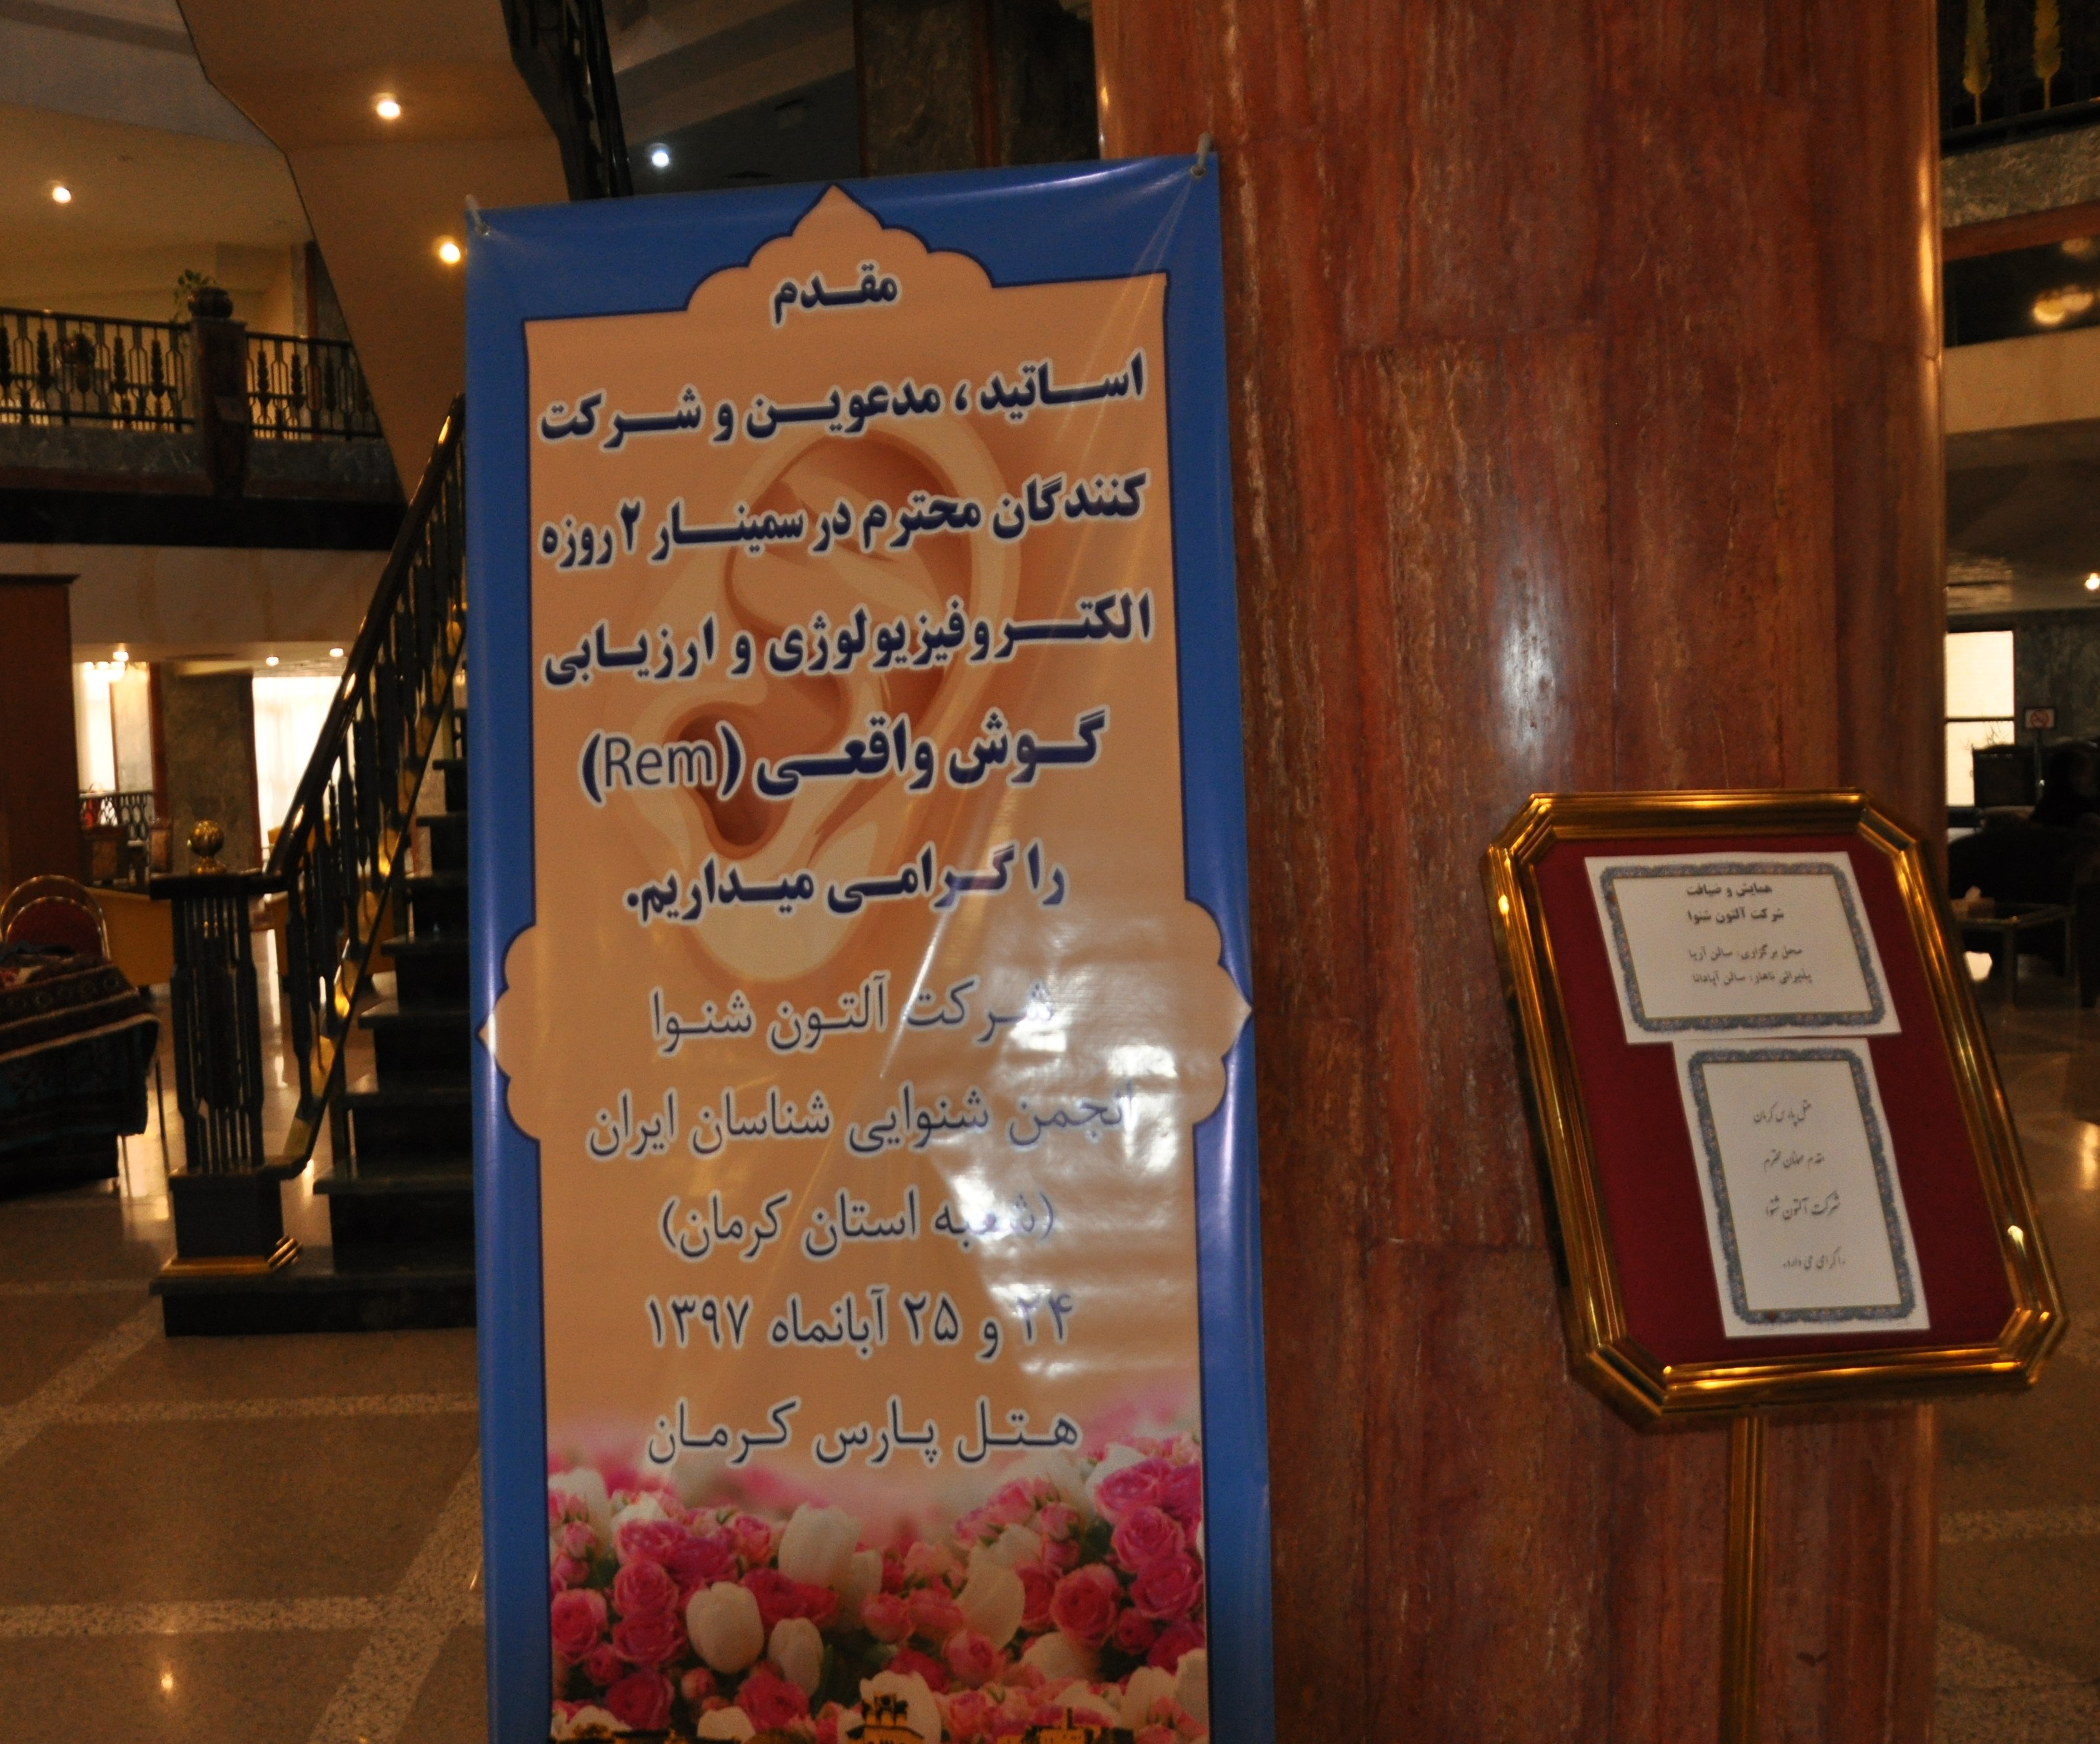 حضور شرکت آلتون شنوا در هتل پارس کرمان